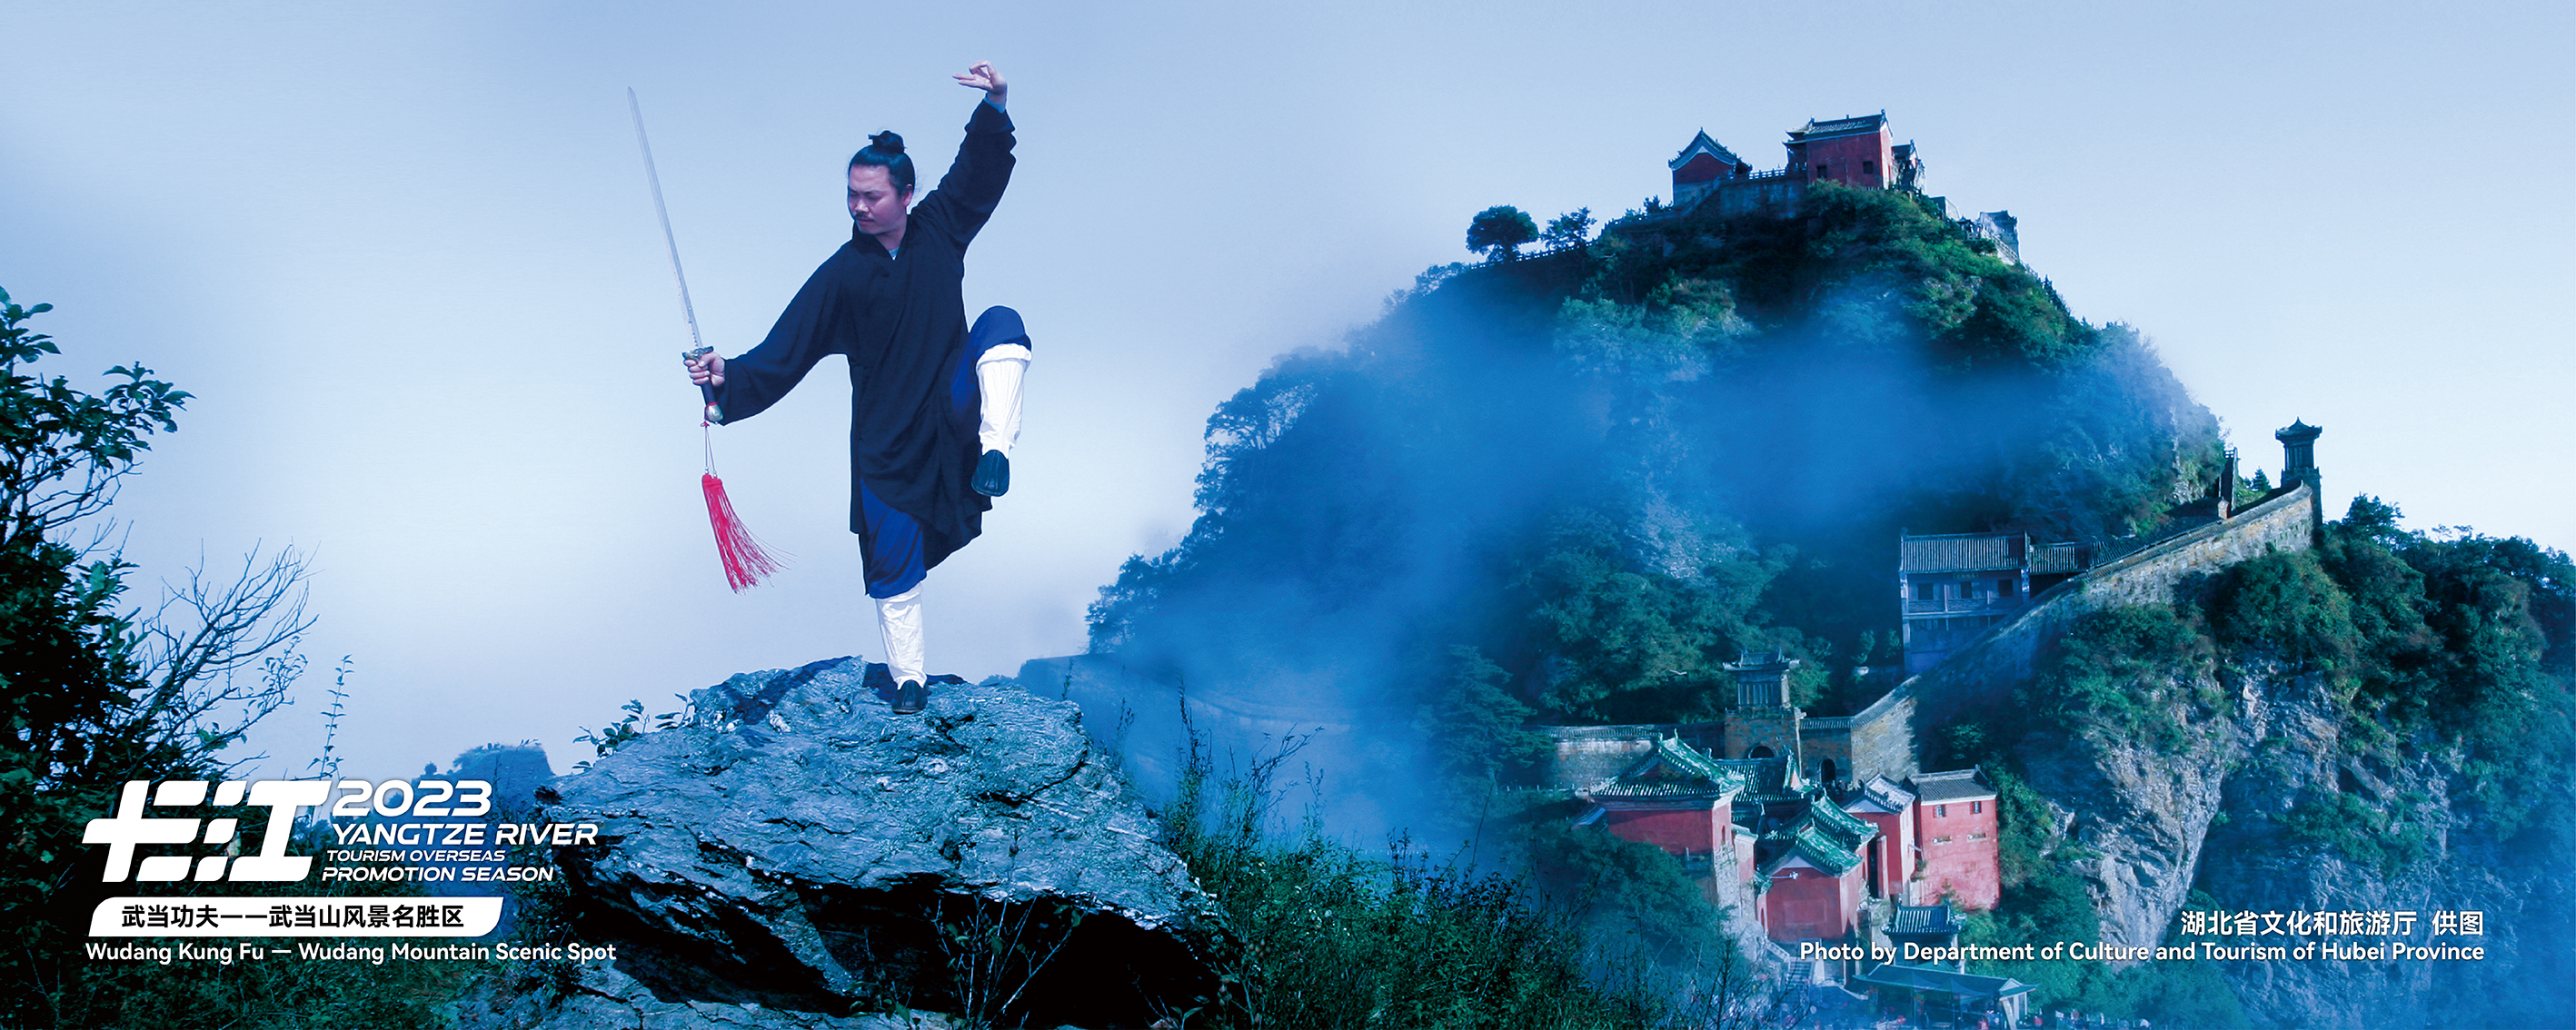 Wudang Kung Fu in Shiyan, Hubei, China /Photo provided to CGTN